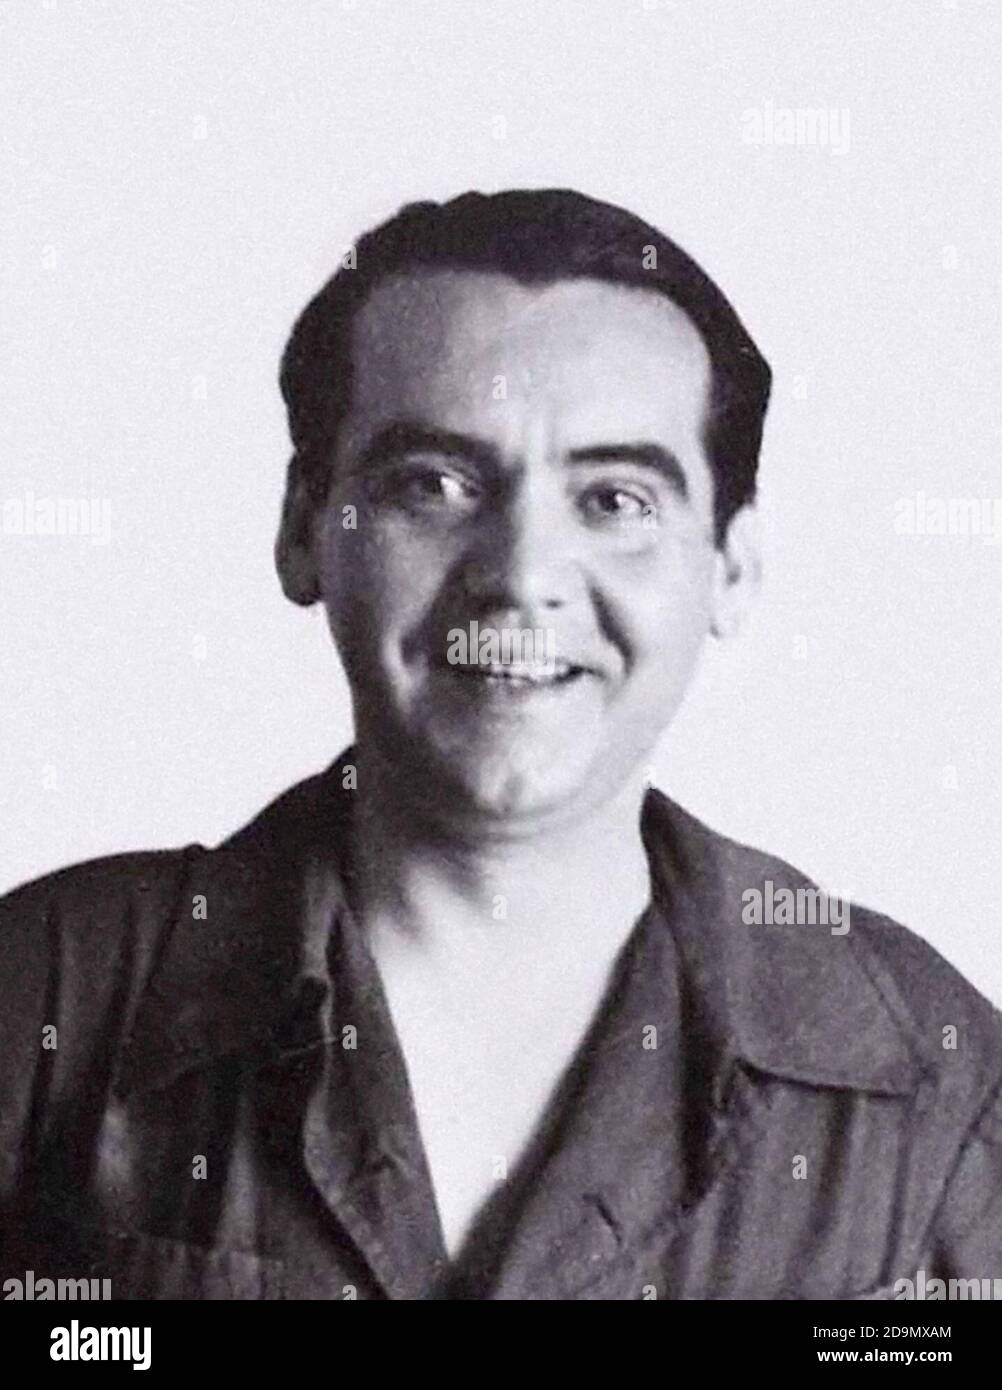 Federico García Lorca. Retrato del poeta y dramaturgo español, Federico del Sagrado corazón de Jesús García Lorca (1898-1936), 1932 Foto de stock